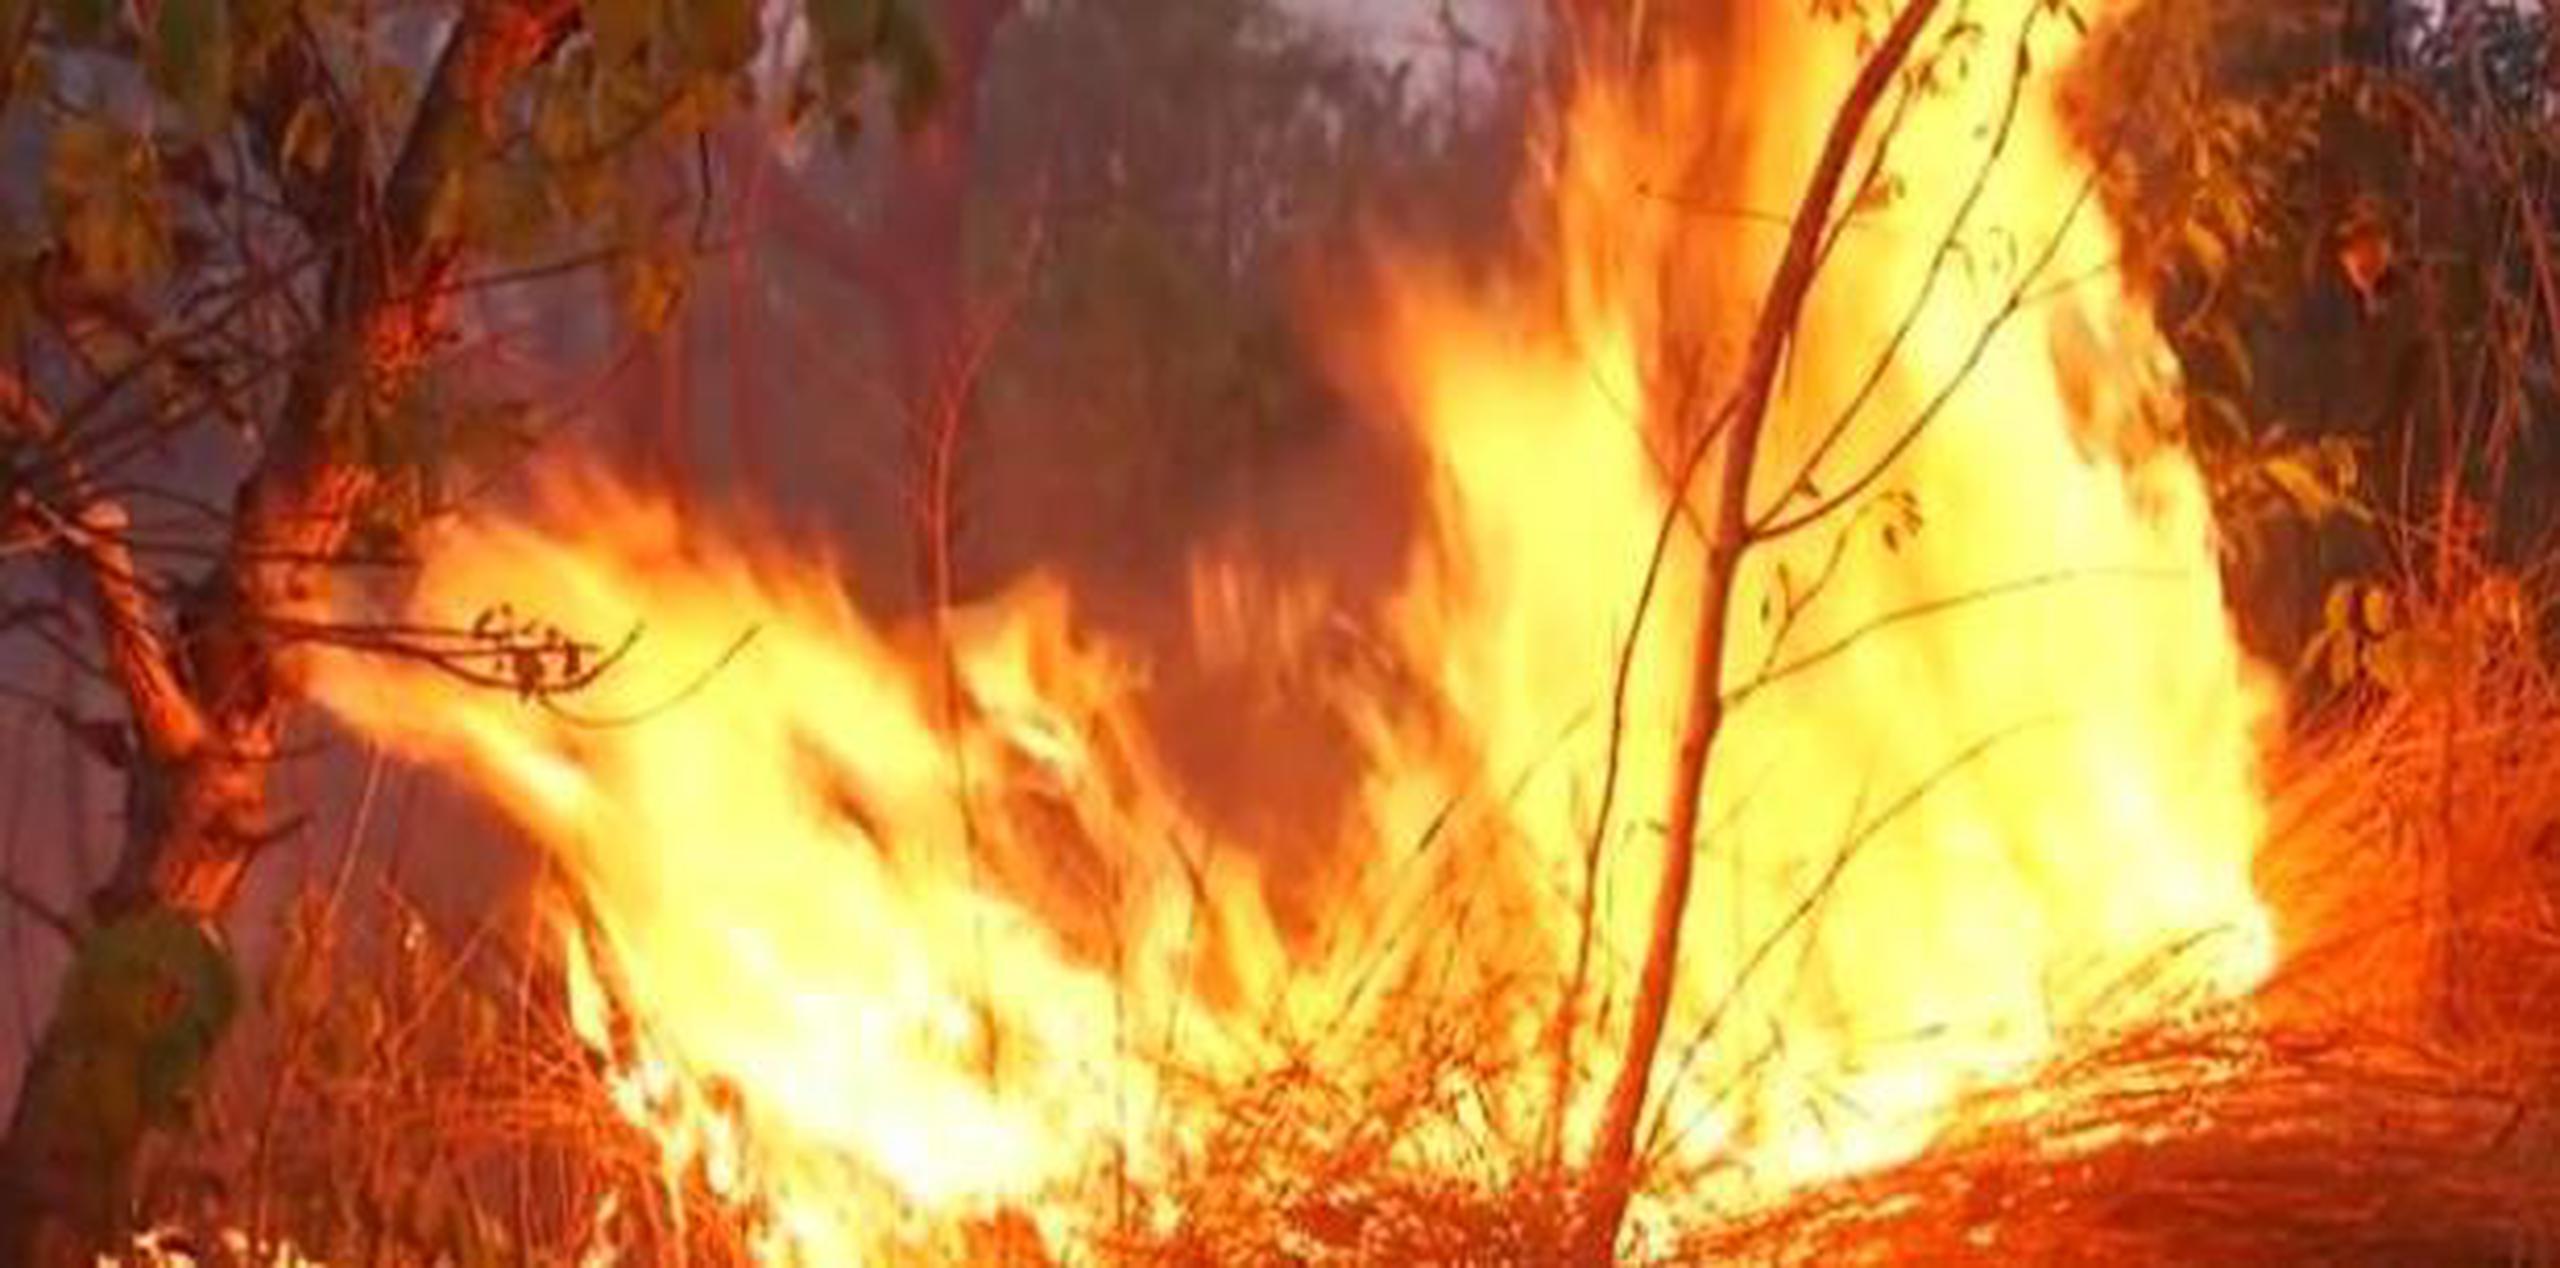 Parte de un fuego en la Amazonia. "El número de focos de calor registrado en la Amazonía ya es en un 60 % superior al de los últimos tres años y ese pico tiene relación con la deforestación y no con una sequía", denunció una organización.  (O Globo/GDA)